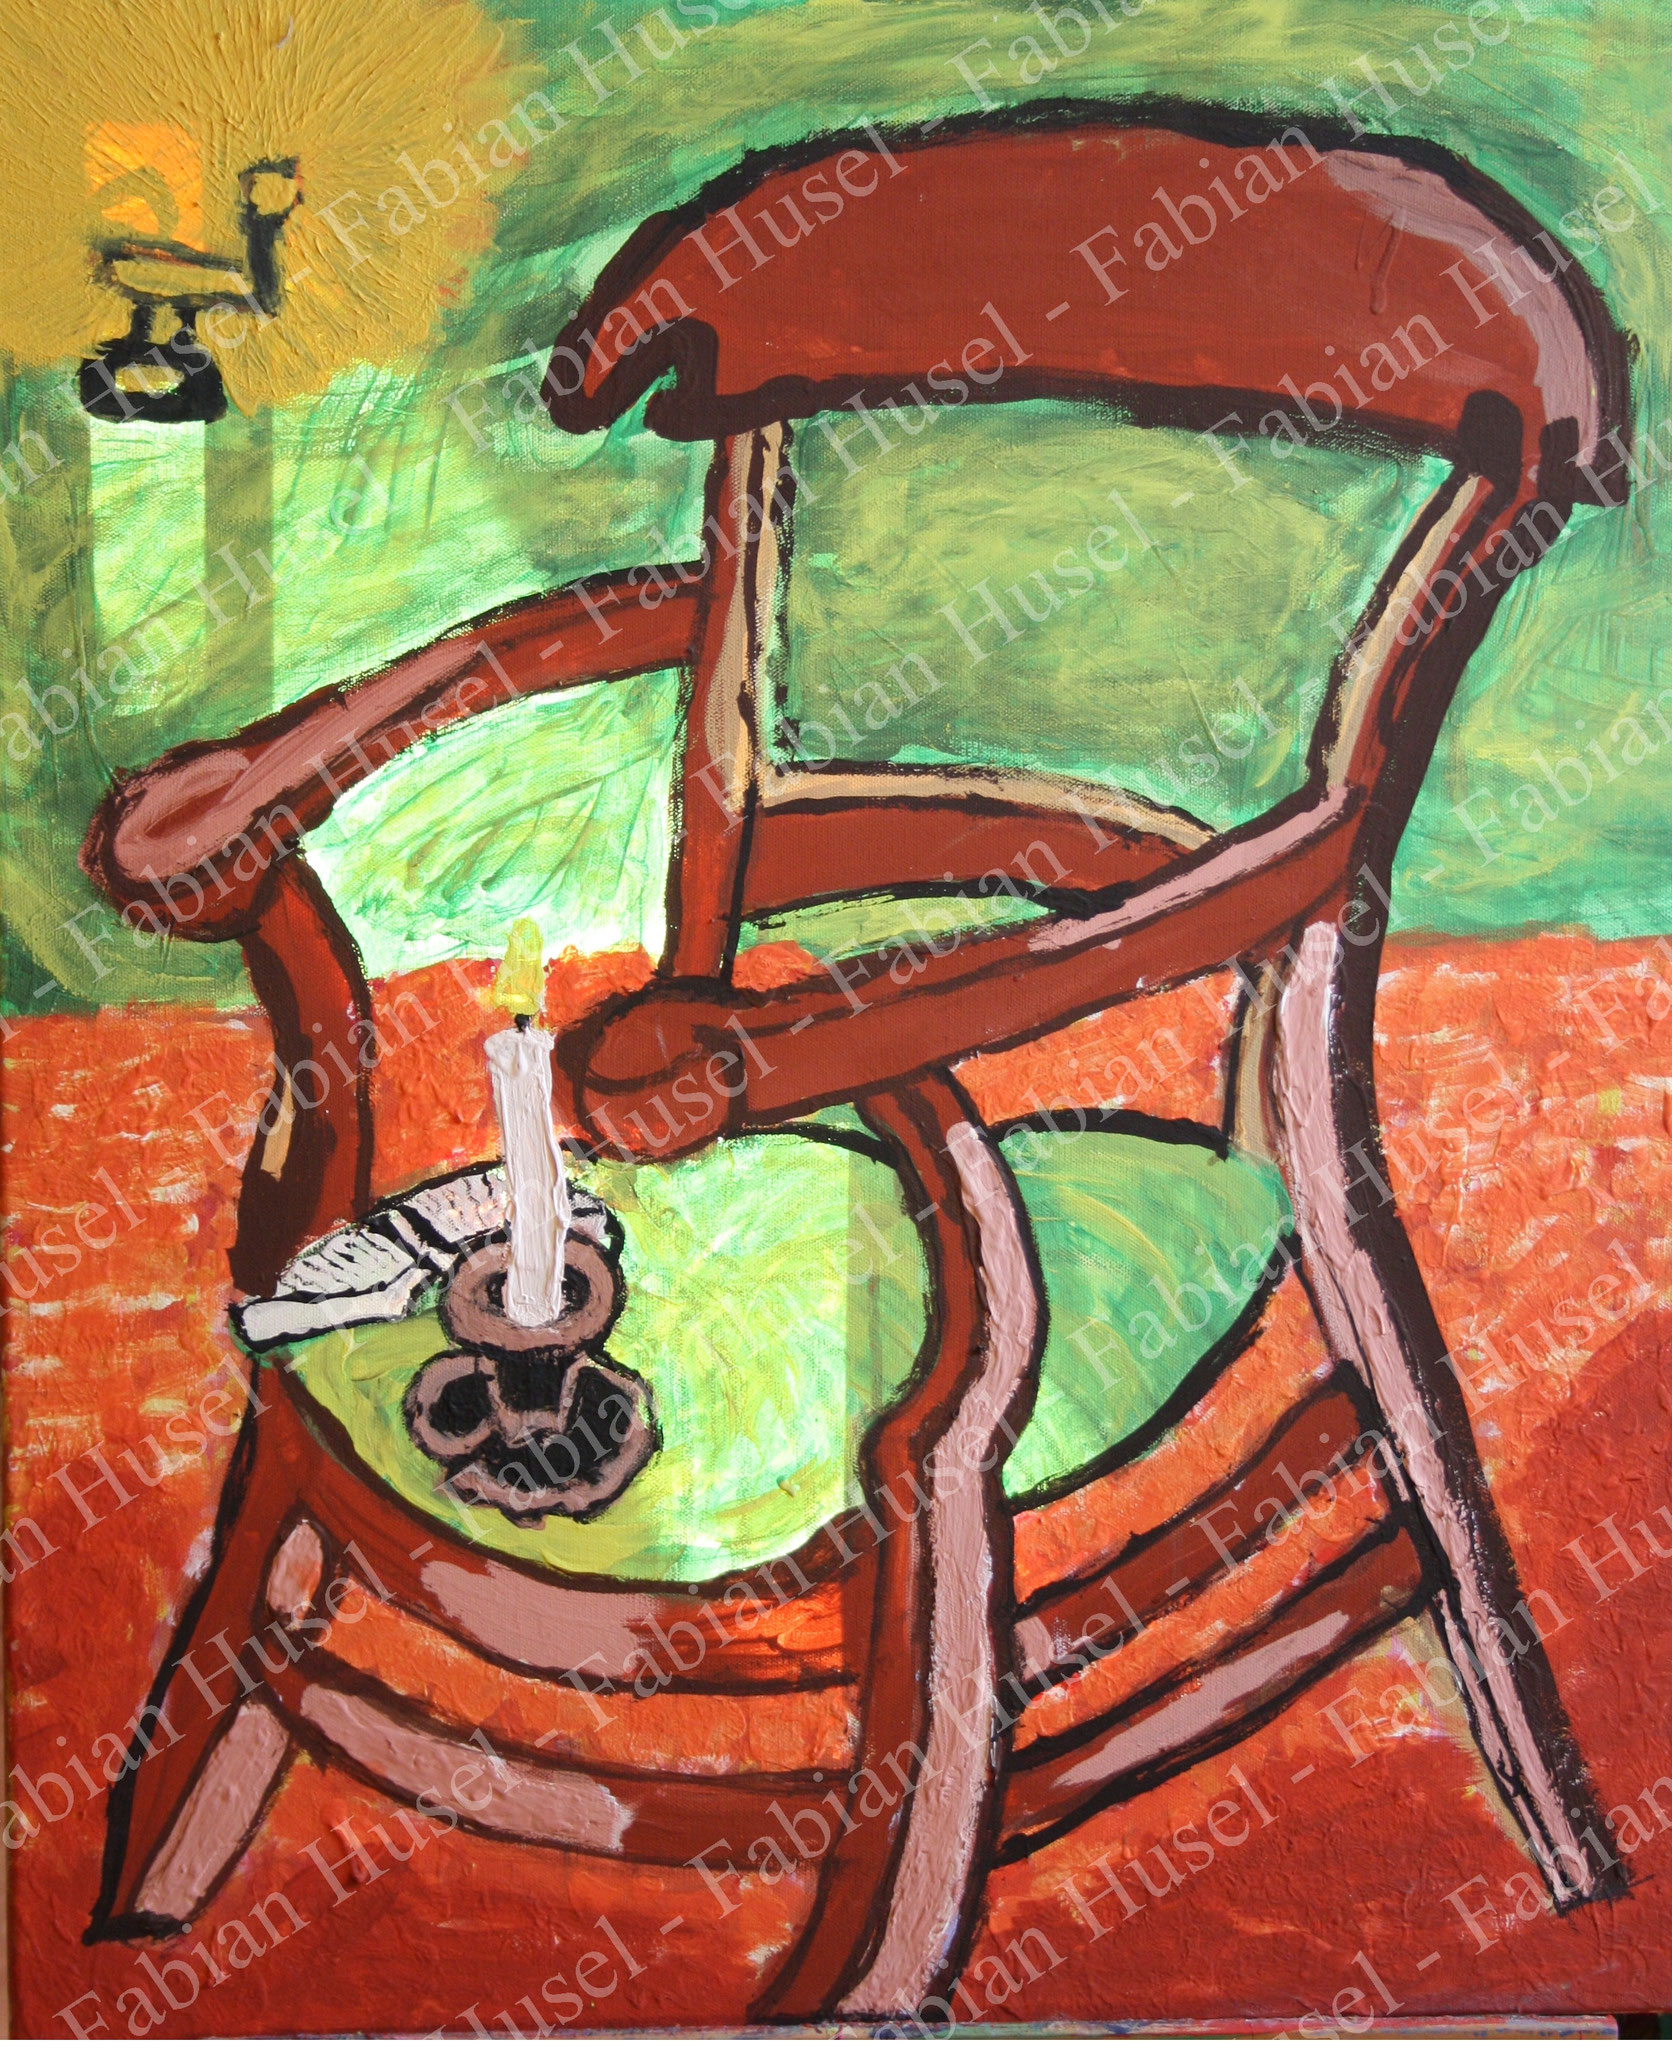 Der Stuhl Gaugins von Van Gogh - neu interpretiert